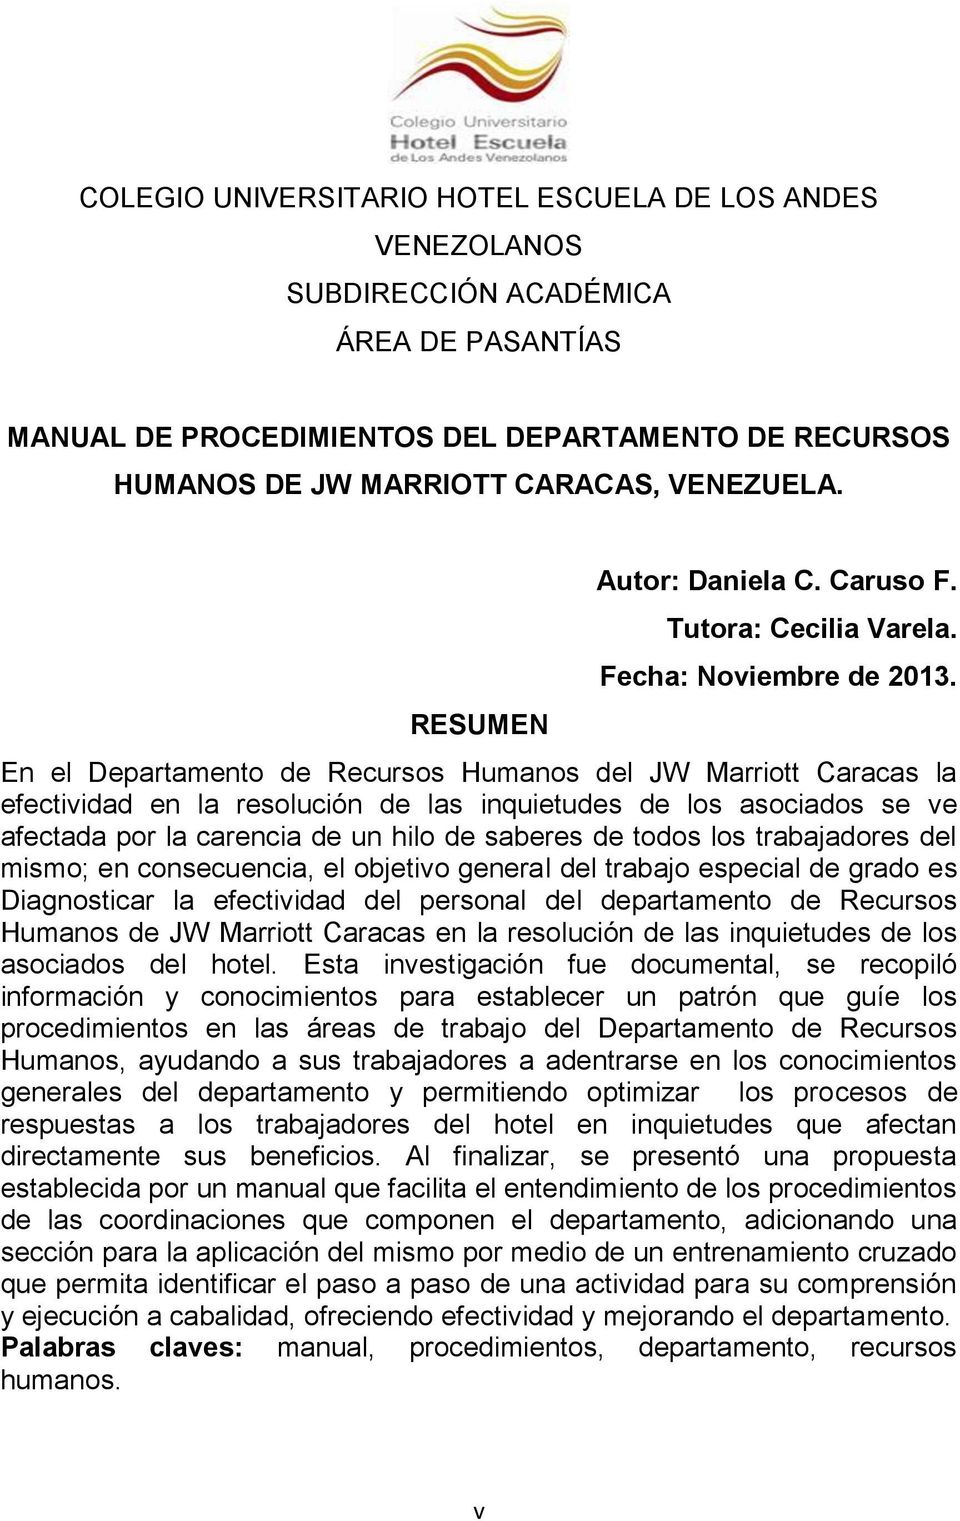 En el Departamento de Recursos Humanos del JW Marriott Caracas la efectividad en la resolución de las inquietudes de los asociados se ve afectada por la carencia de un hilo de saberes de todos los